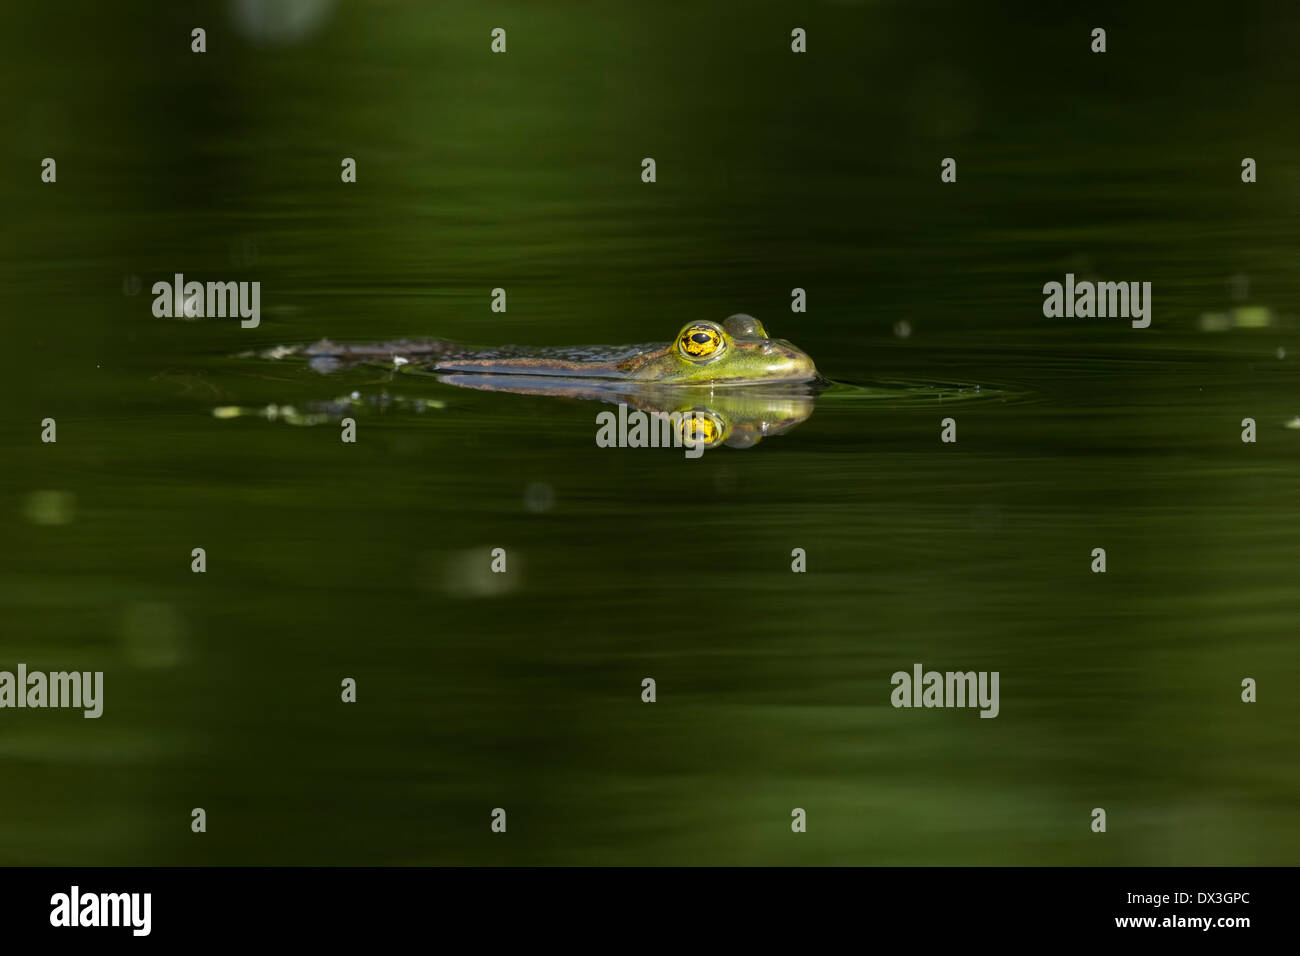 Grenouille des marais (Pelophylax ridibundus) flottant dans l'eau à la recherche d'insectes Banque D'Images